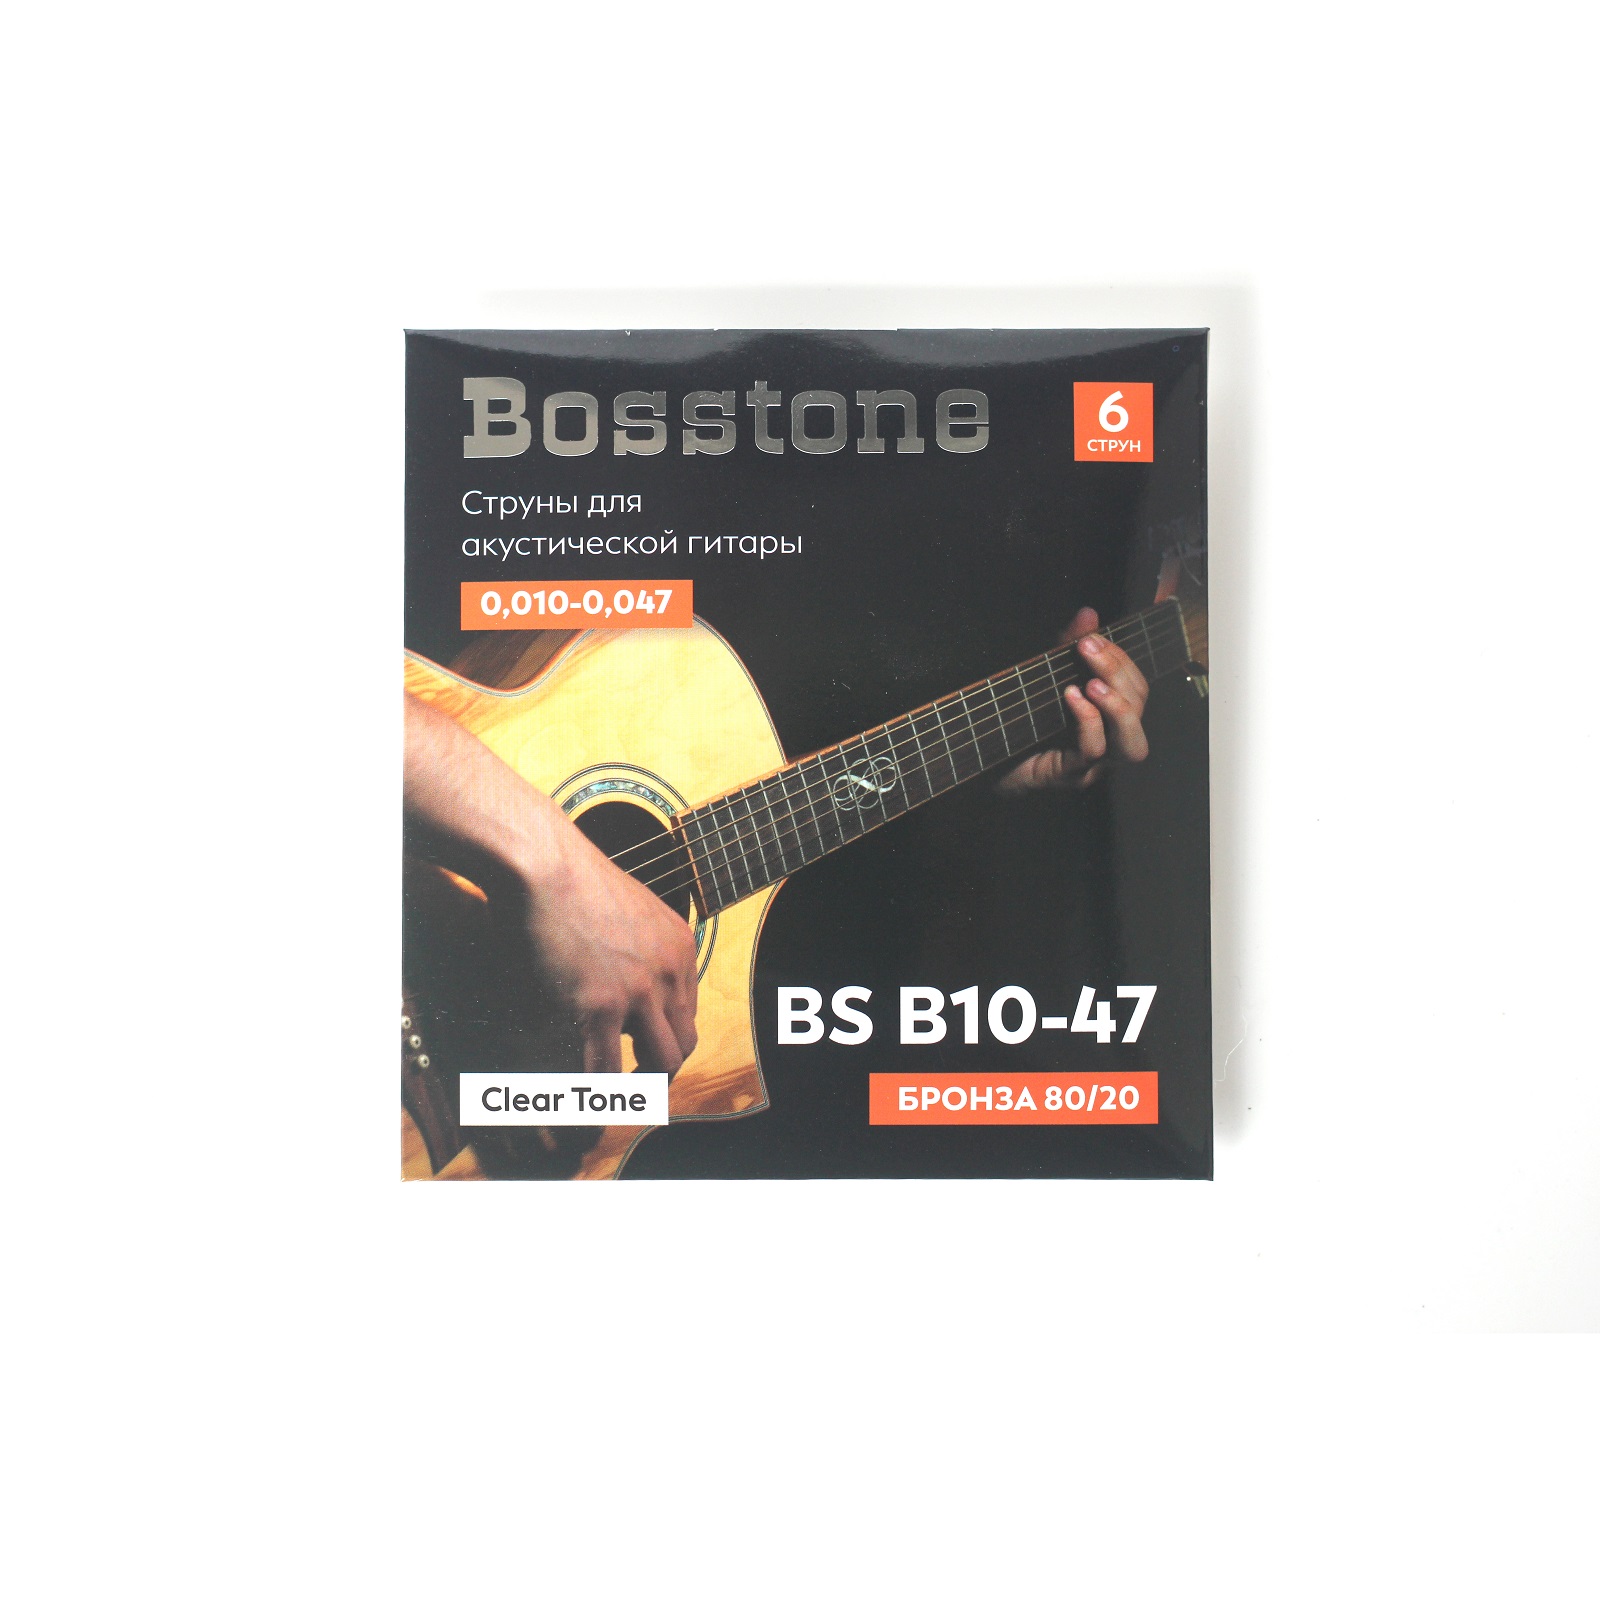 Bosstone BS B10-47 Струны для акустической гитары бронза 80/20 калибр 0,010-0,047